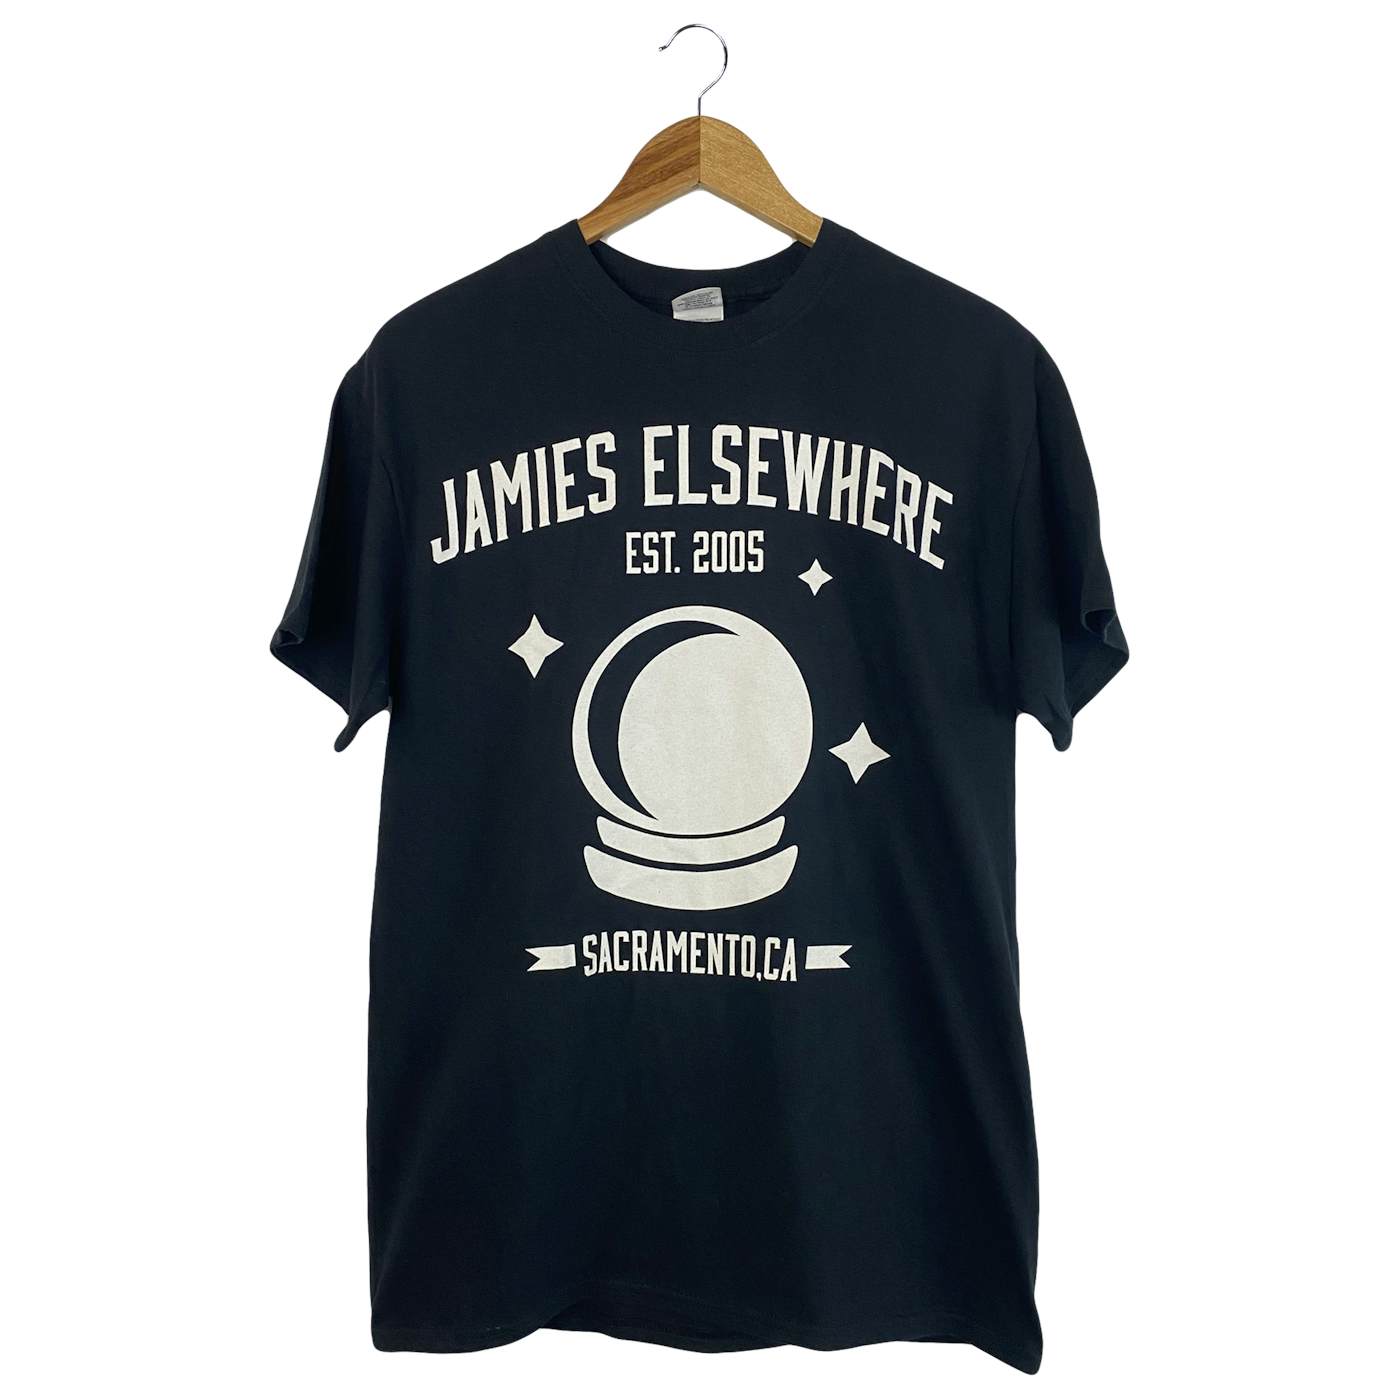 Jamie's Elsewhere - Globe Shirt